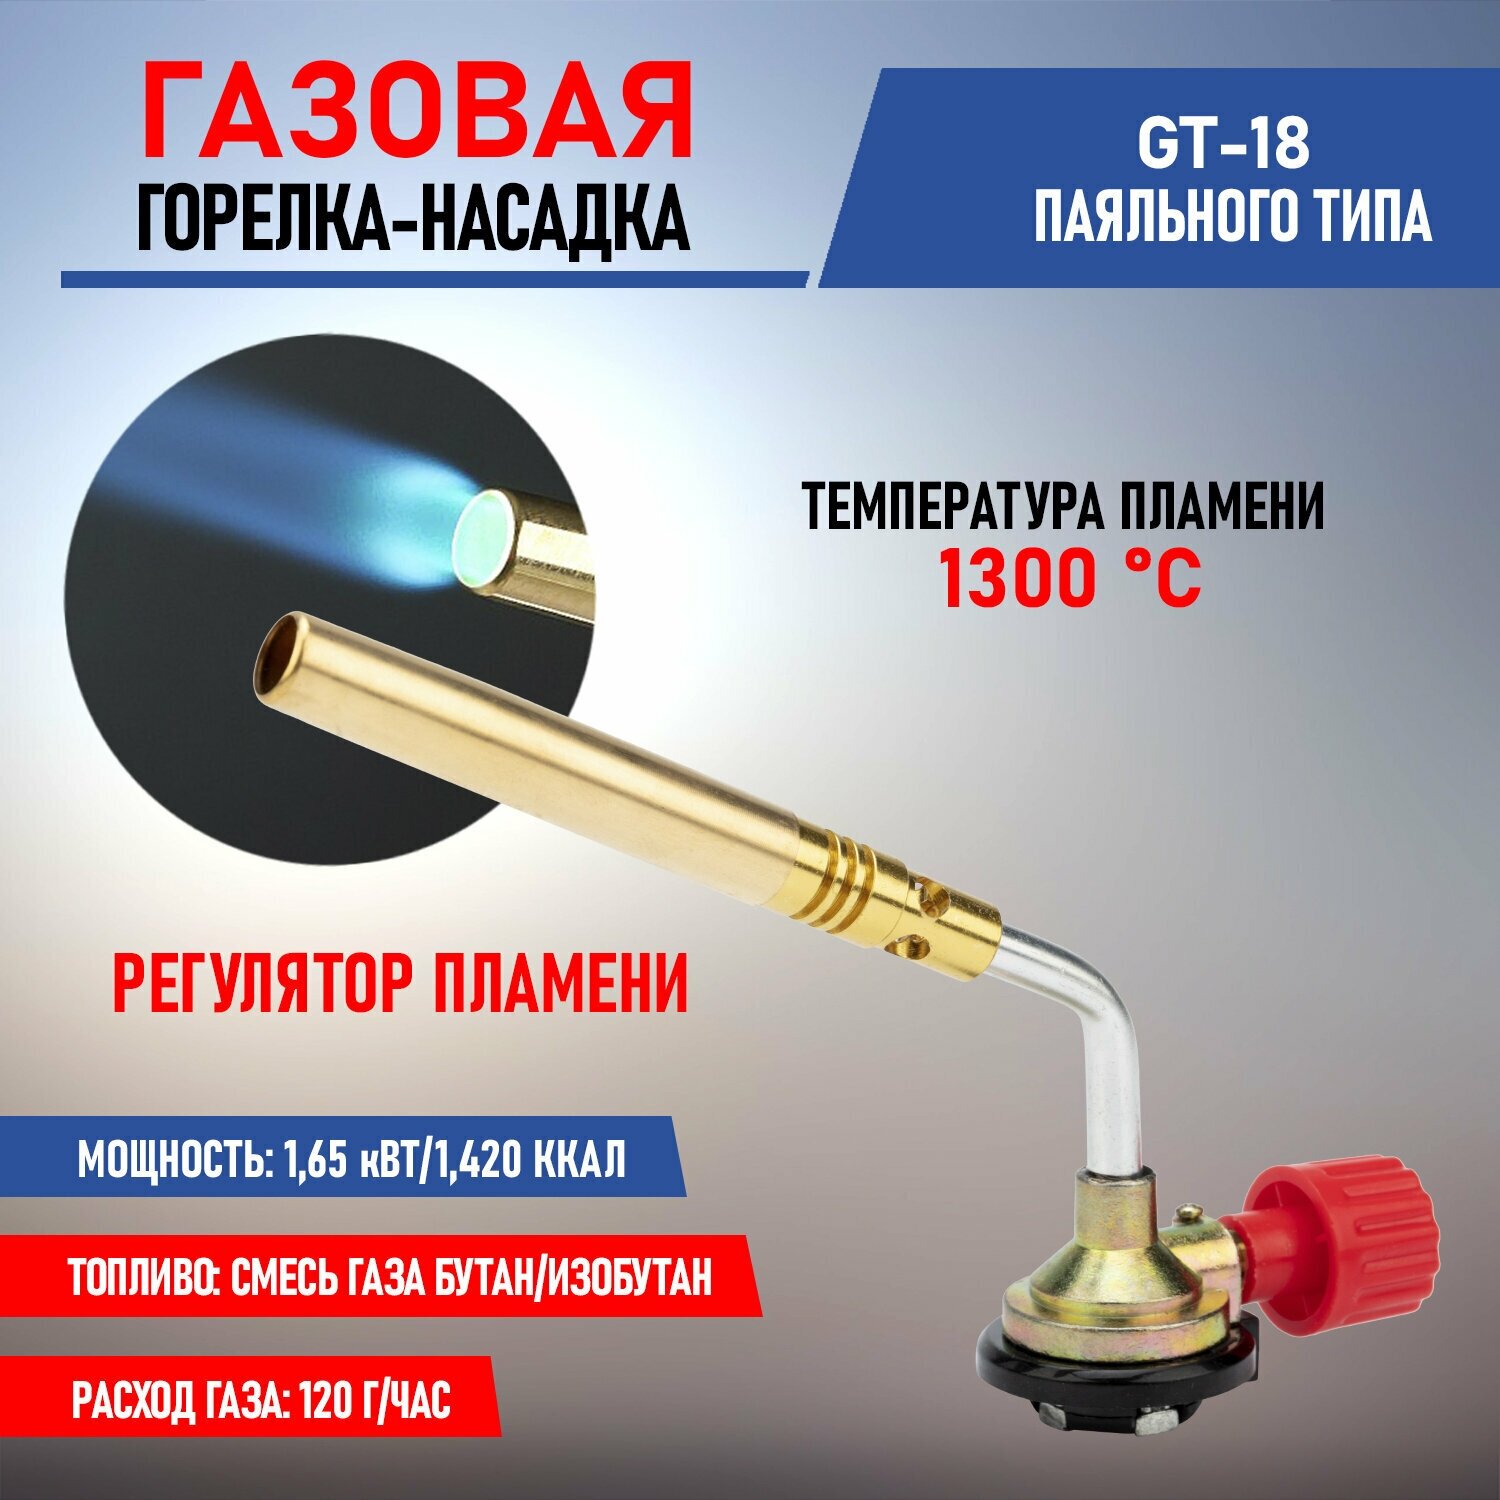 Механическая газовая горелка-насадка GT-18 REXANT с узким соплом и регулятором пламени